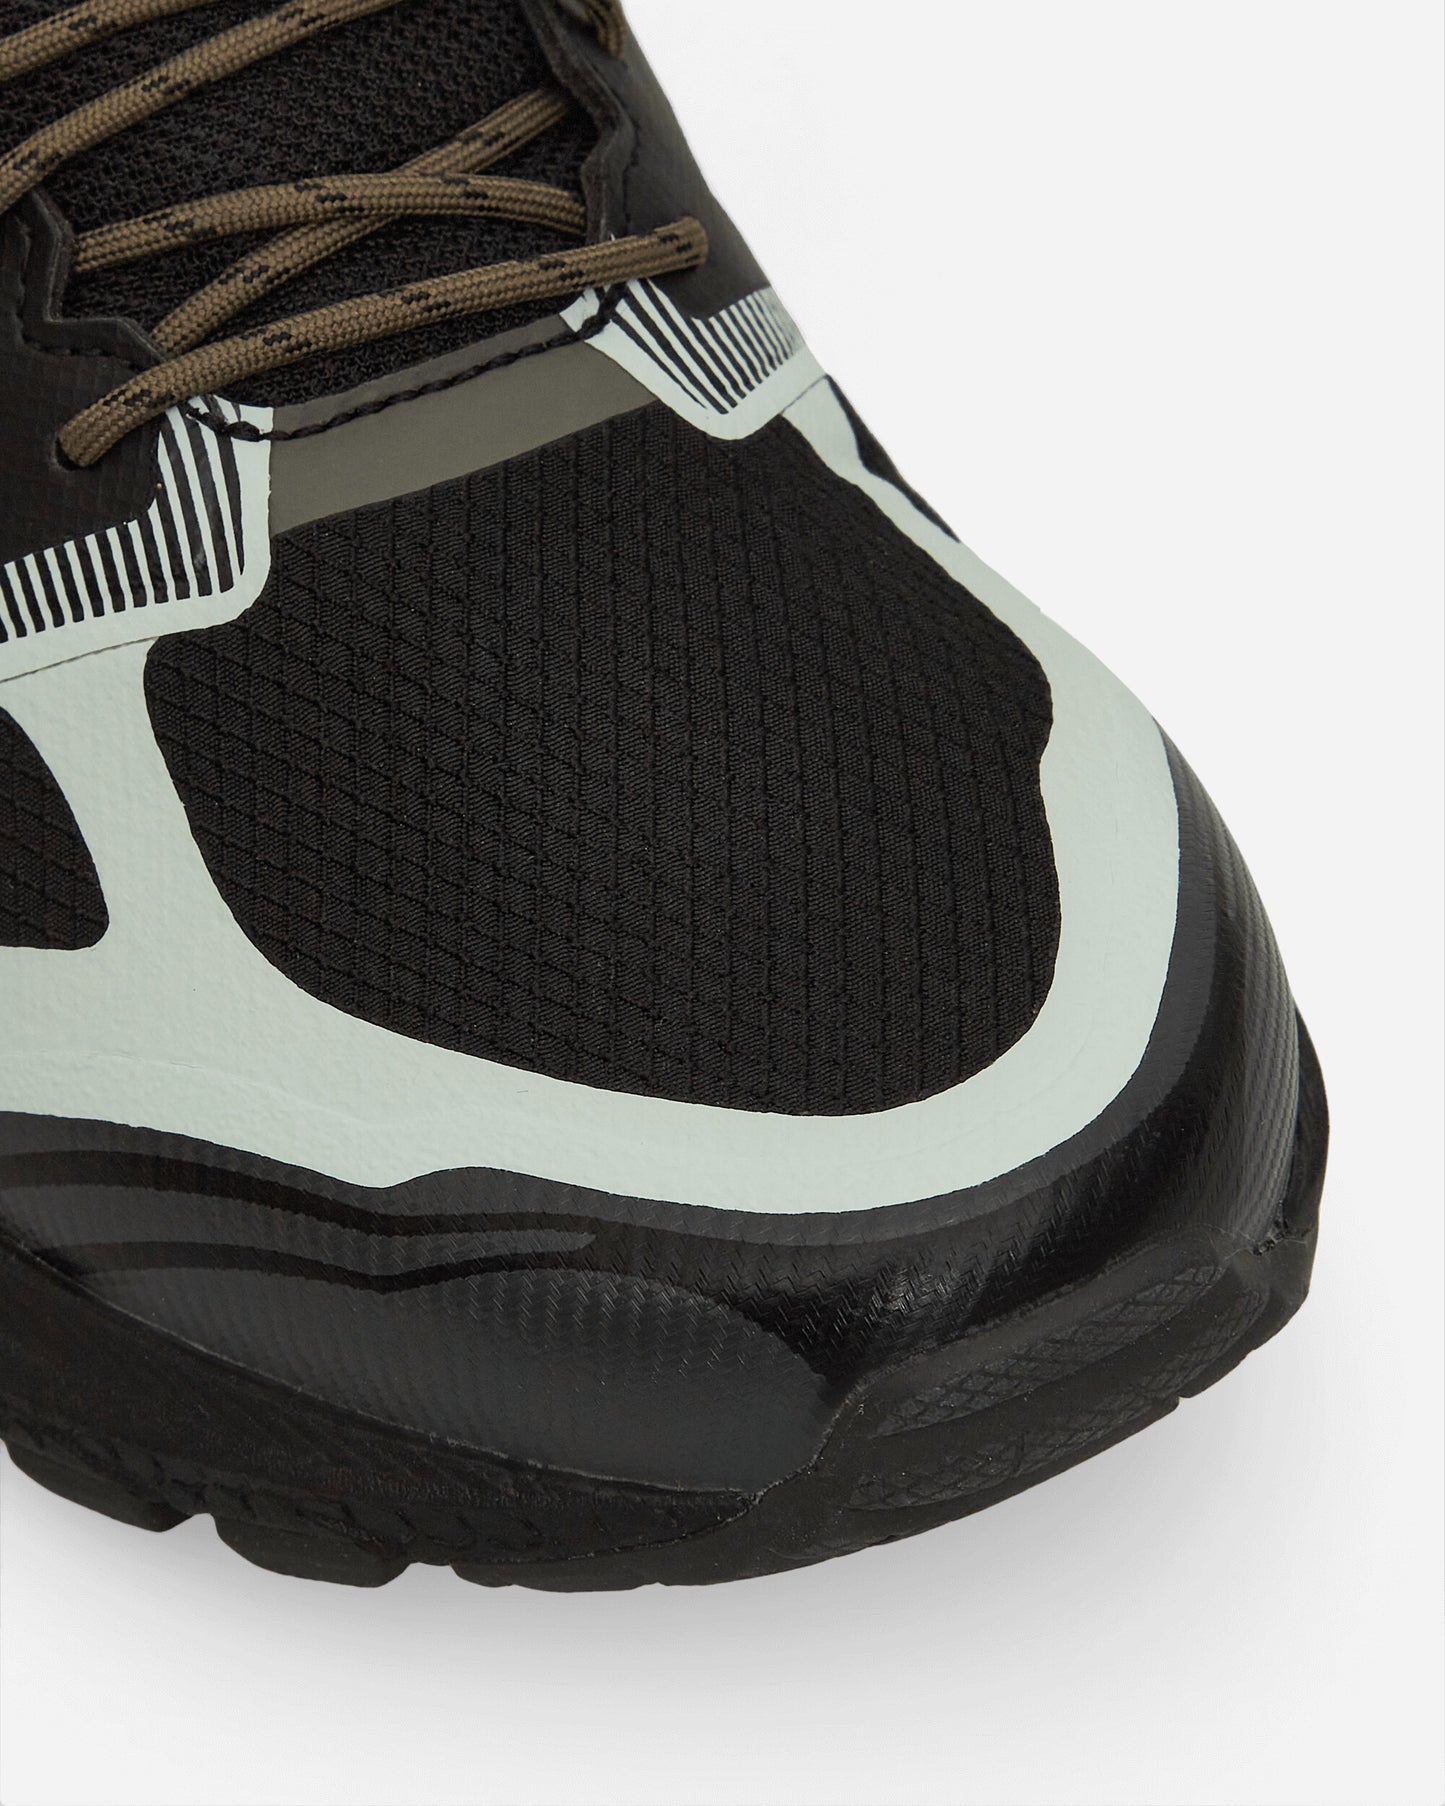 Asics Gel-Terrain Black/Truffle Grey Sneakers Low 1203A342-002